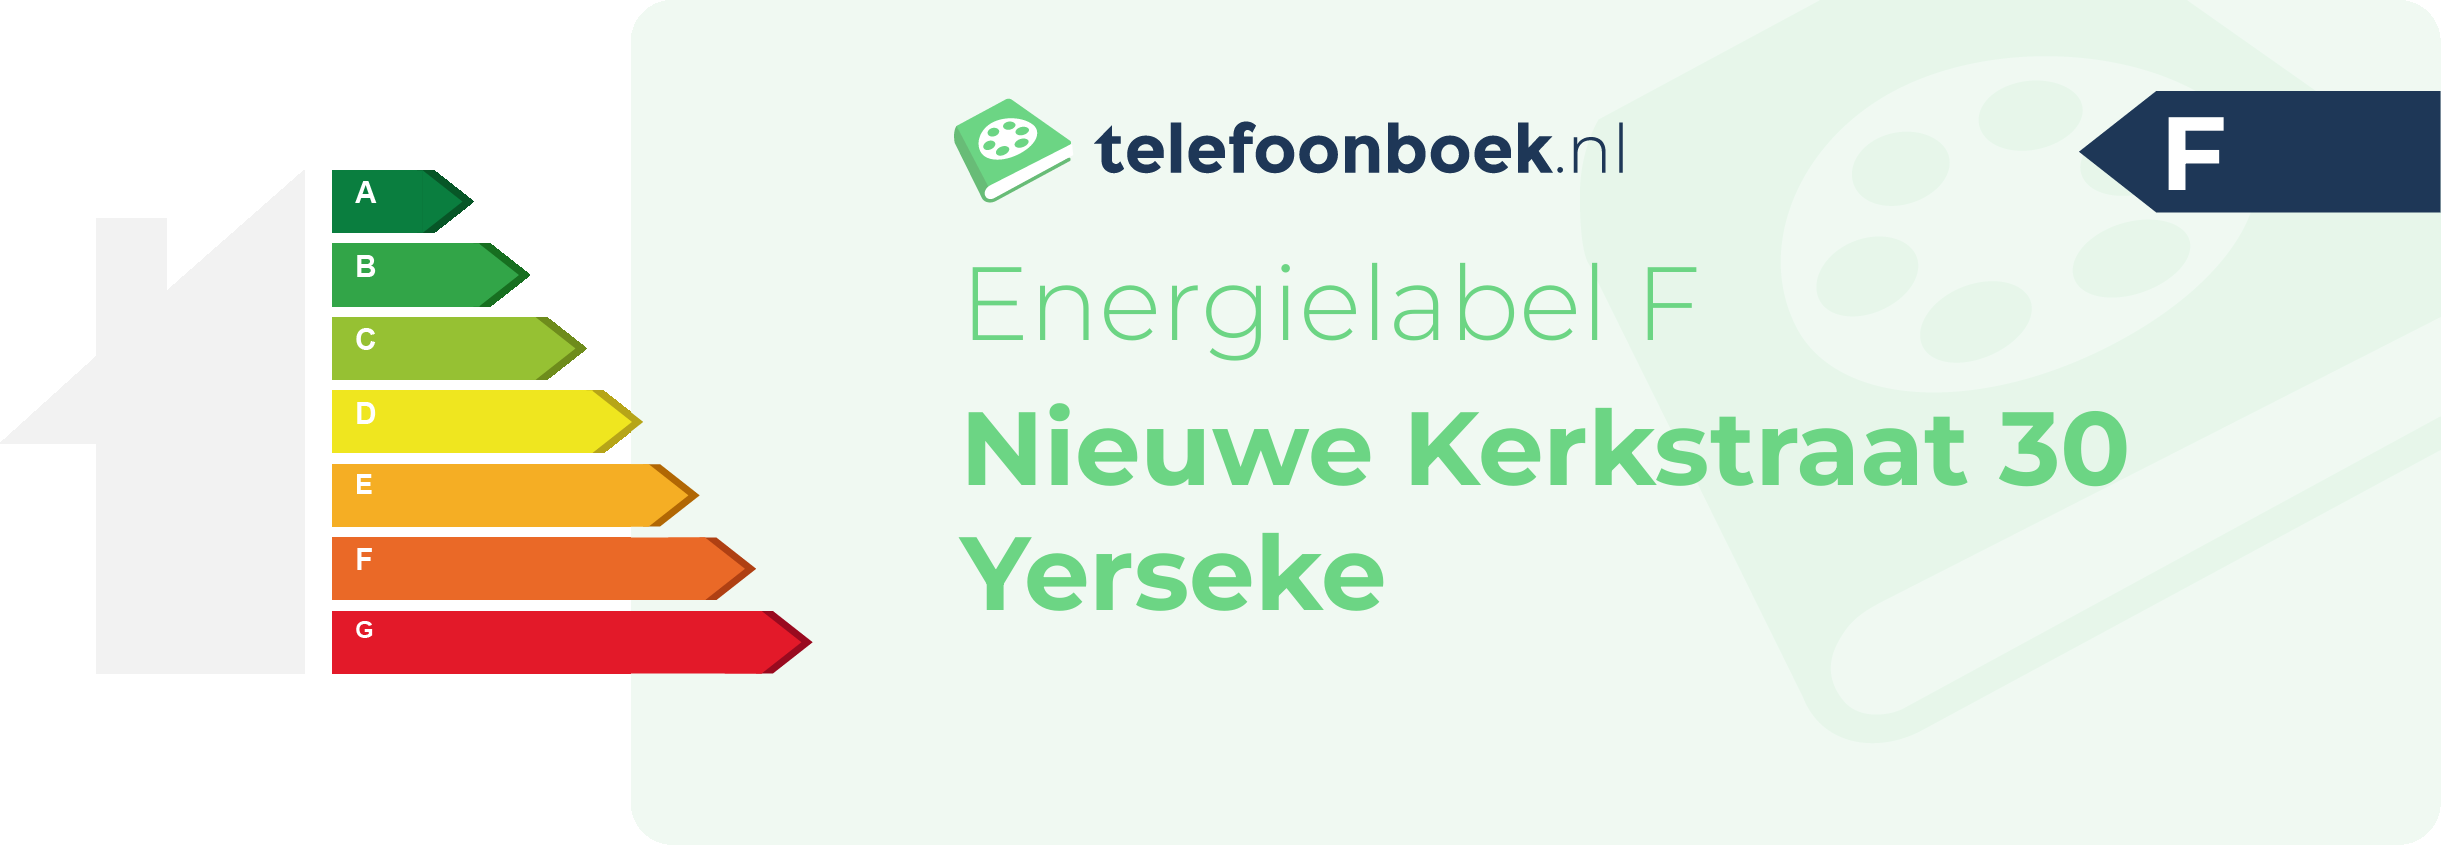 Energielabel Nieuwe Kerkstraat 30 Yerseke